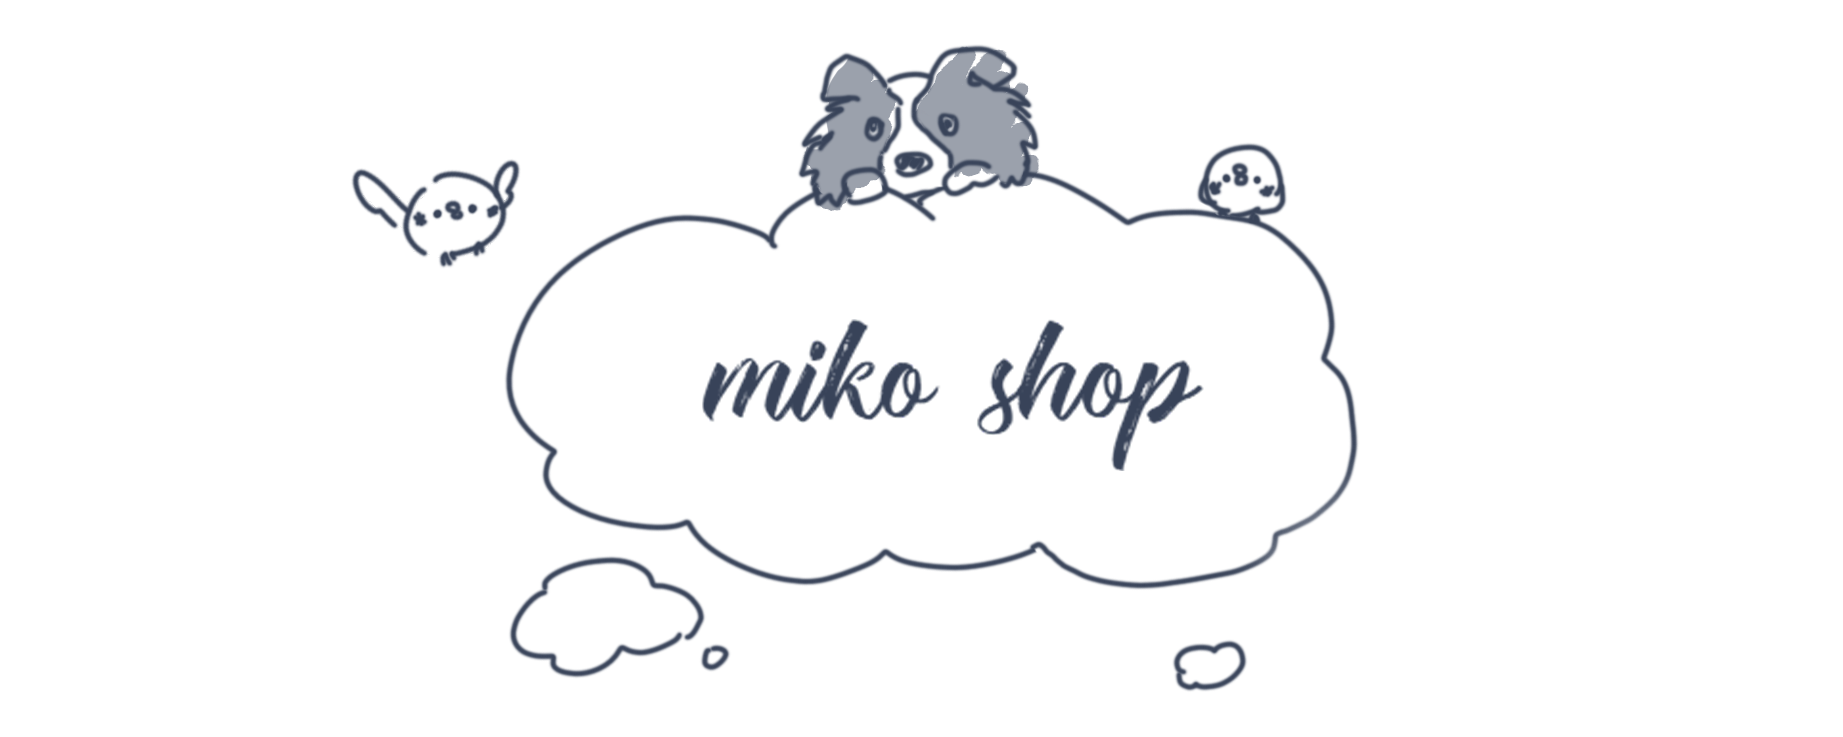 miko shop